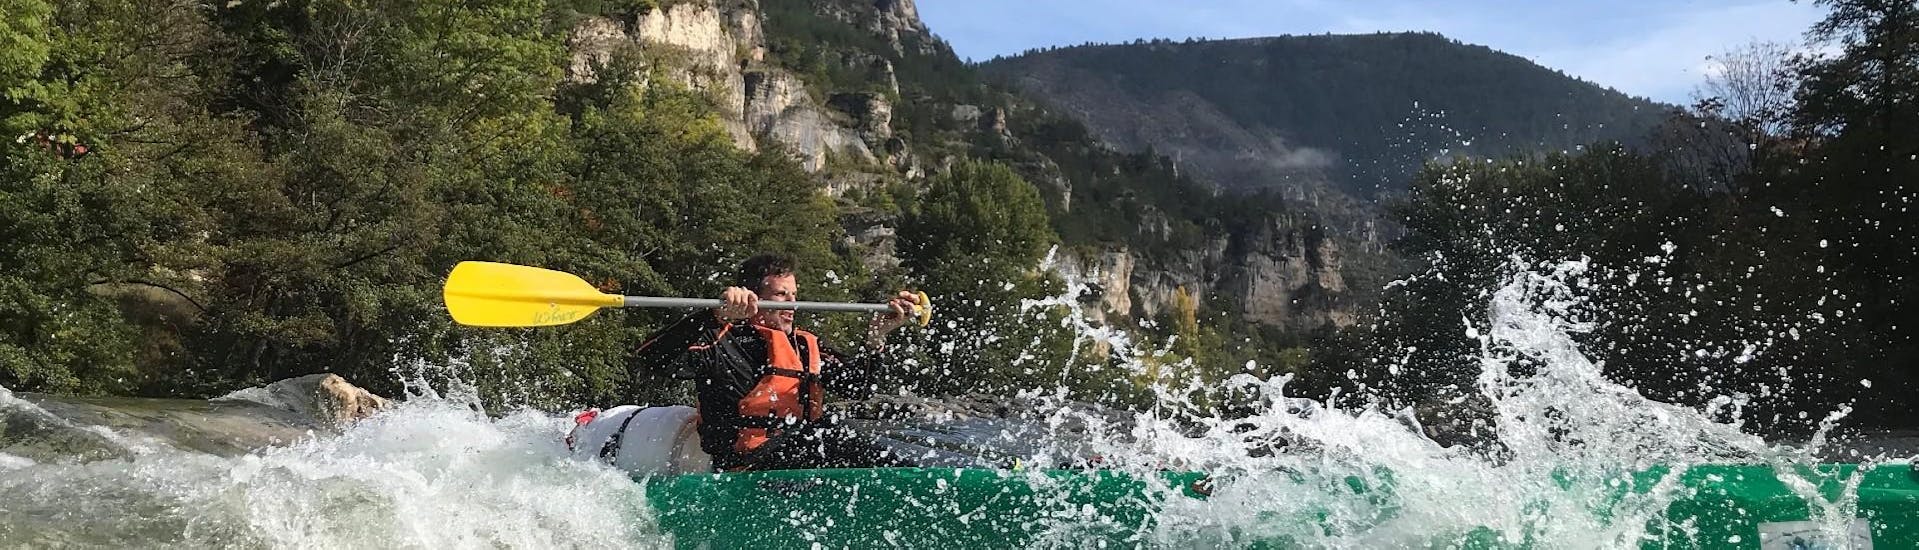 Een toerist peddelt energiek in het hart van de Gorges tijdens de kanoverhuur van 24 km op de Tarn met Kano La Cazelle Gorges du Tarn.